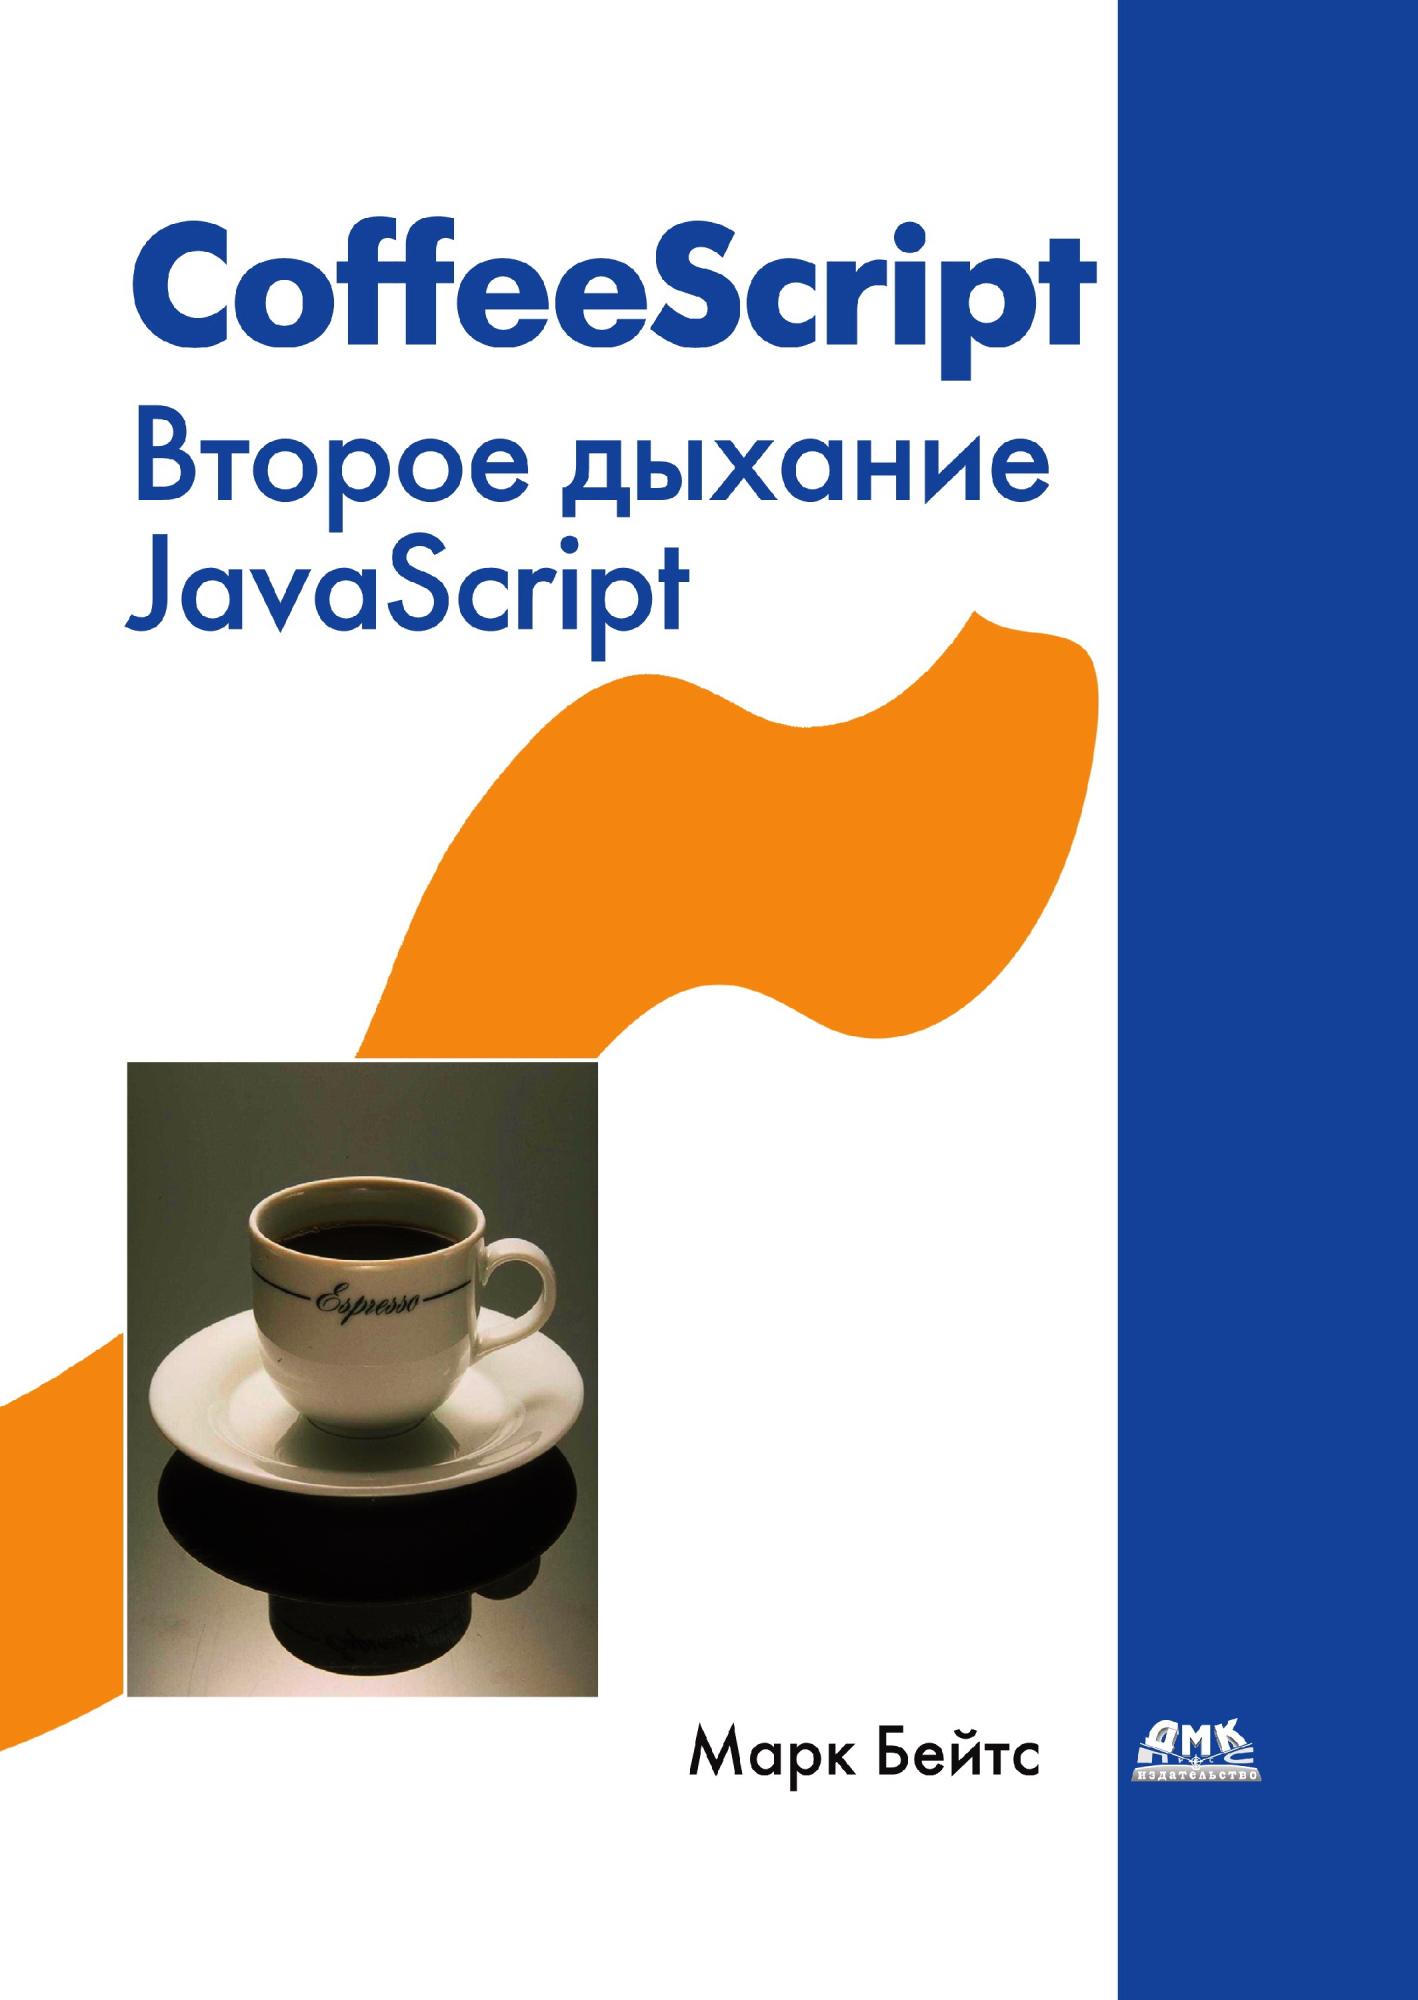 Coffeescript